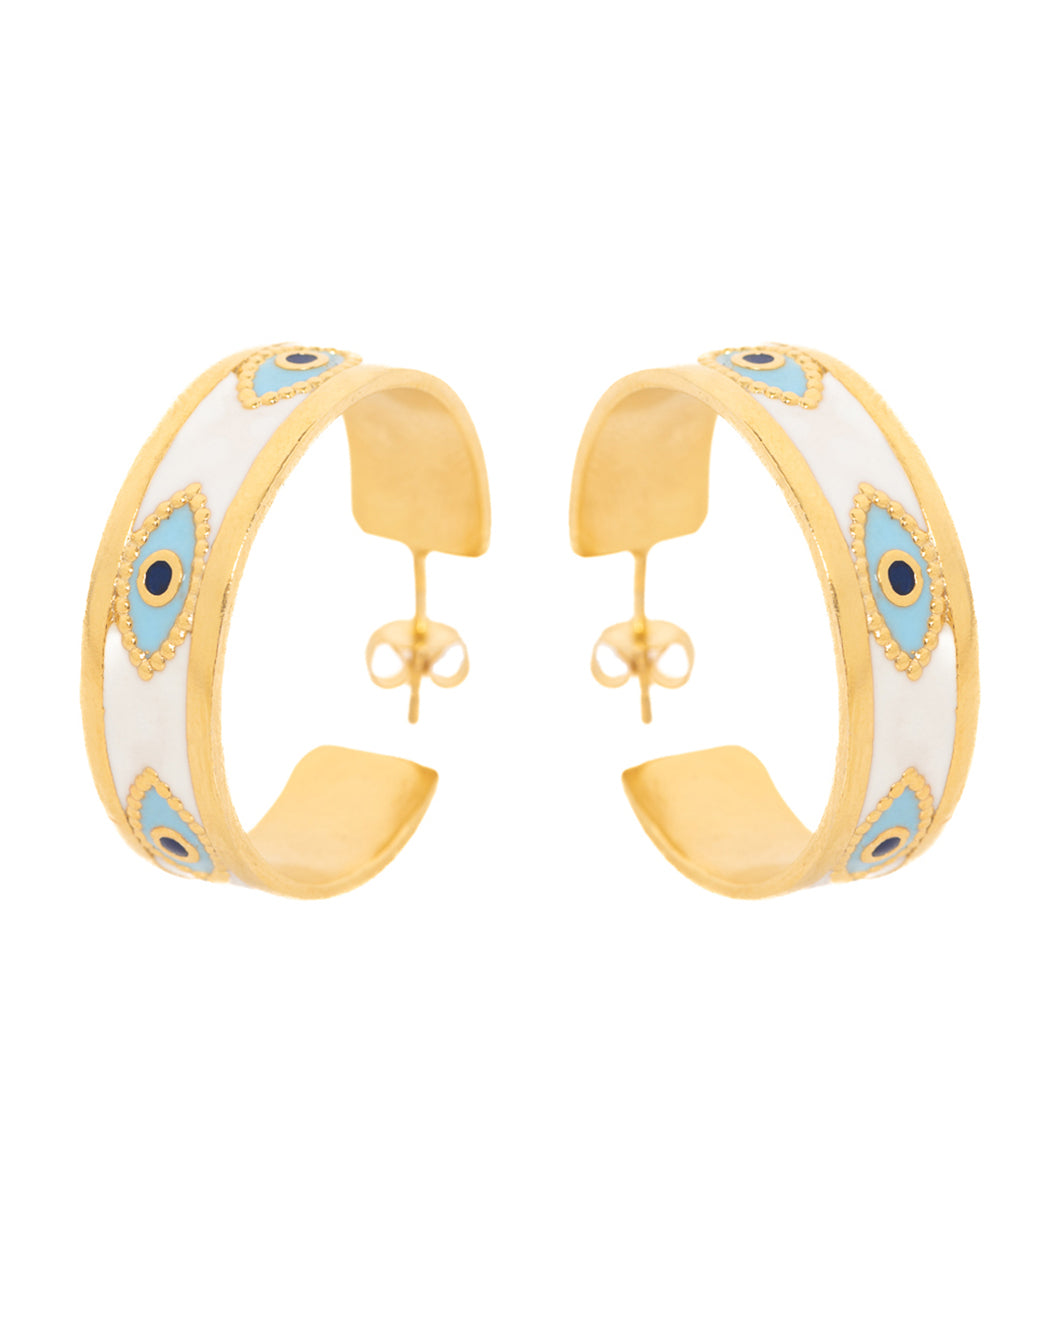 Capri earrings